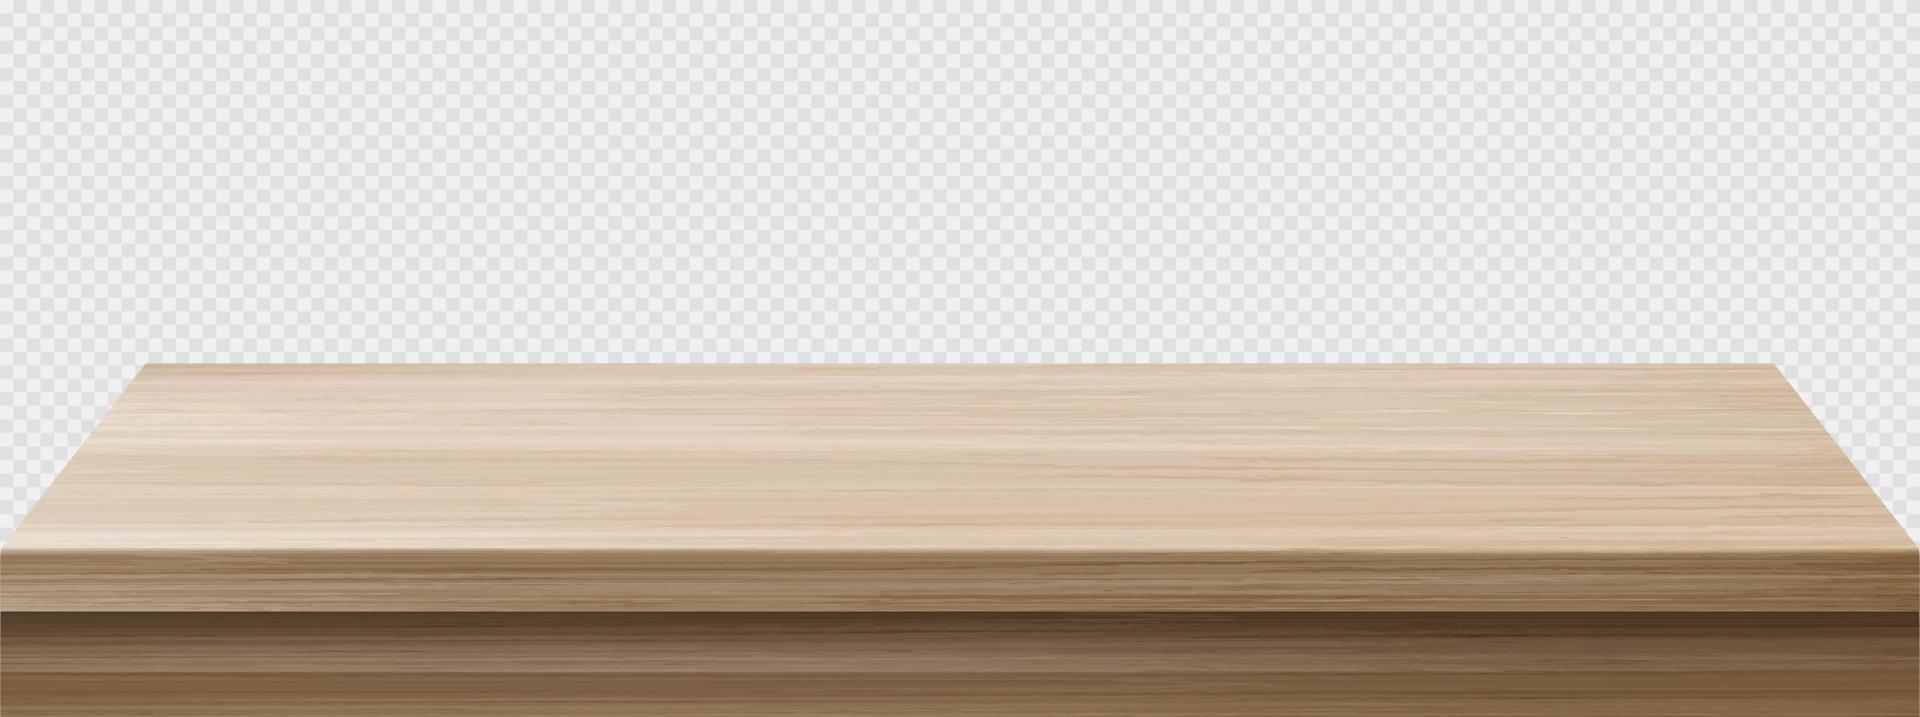 Perspektivische Ansicht des Holztischs, Holzoberfläche vektor